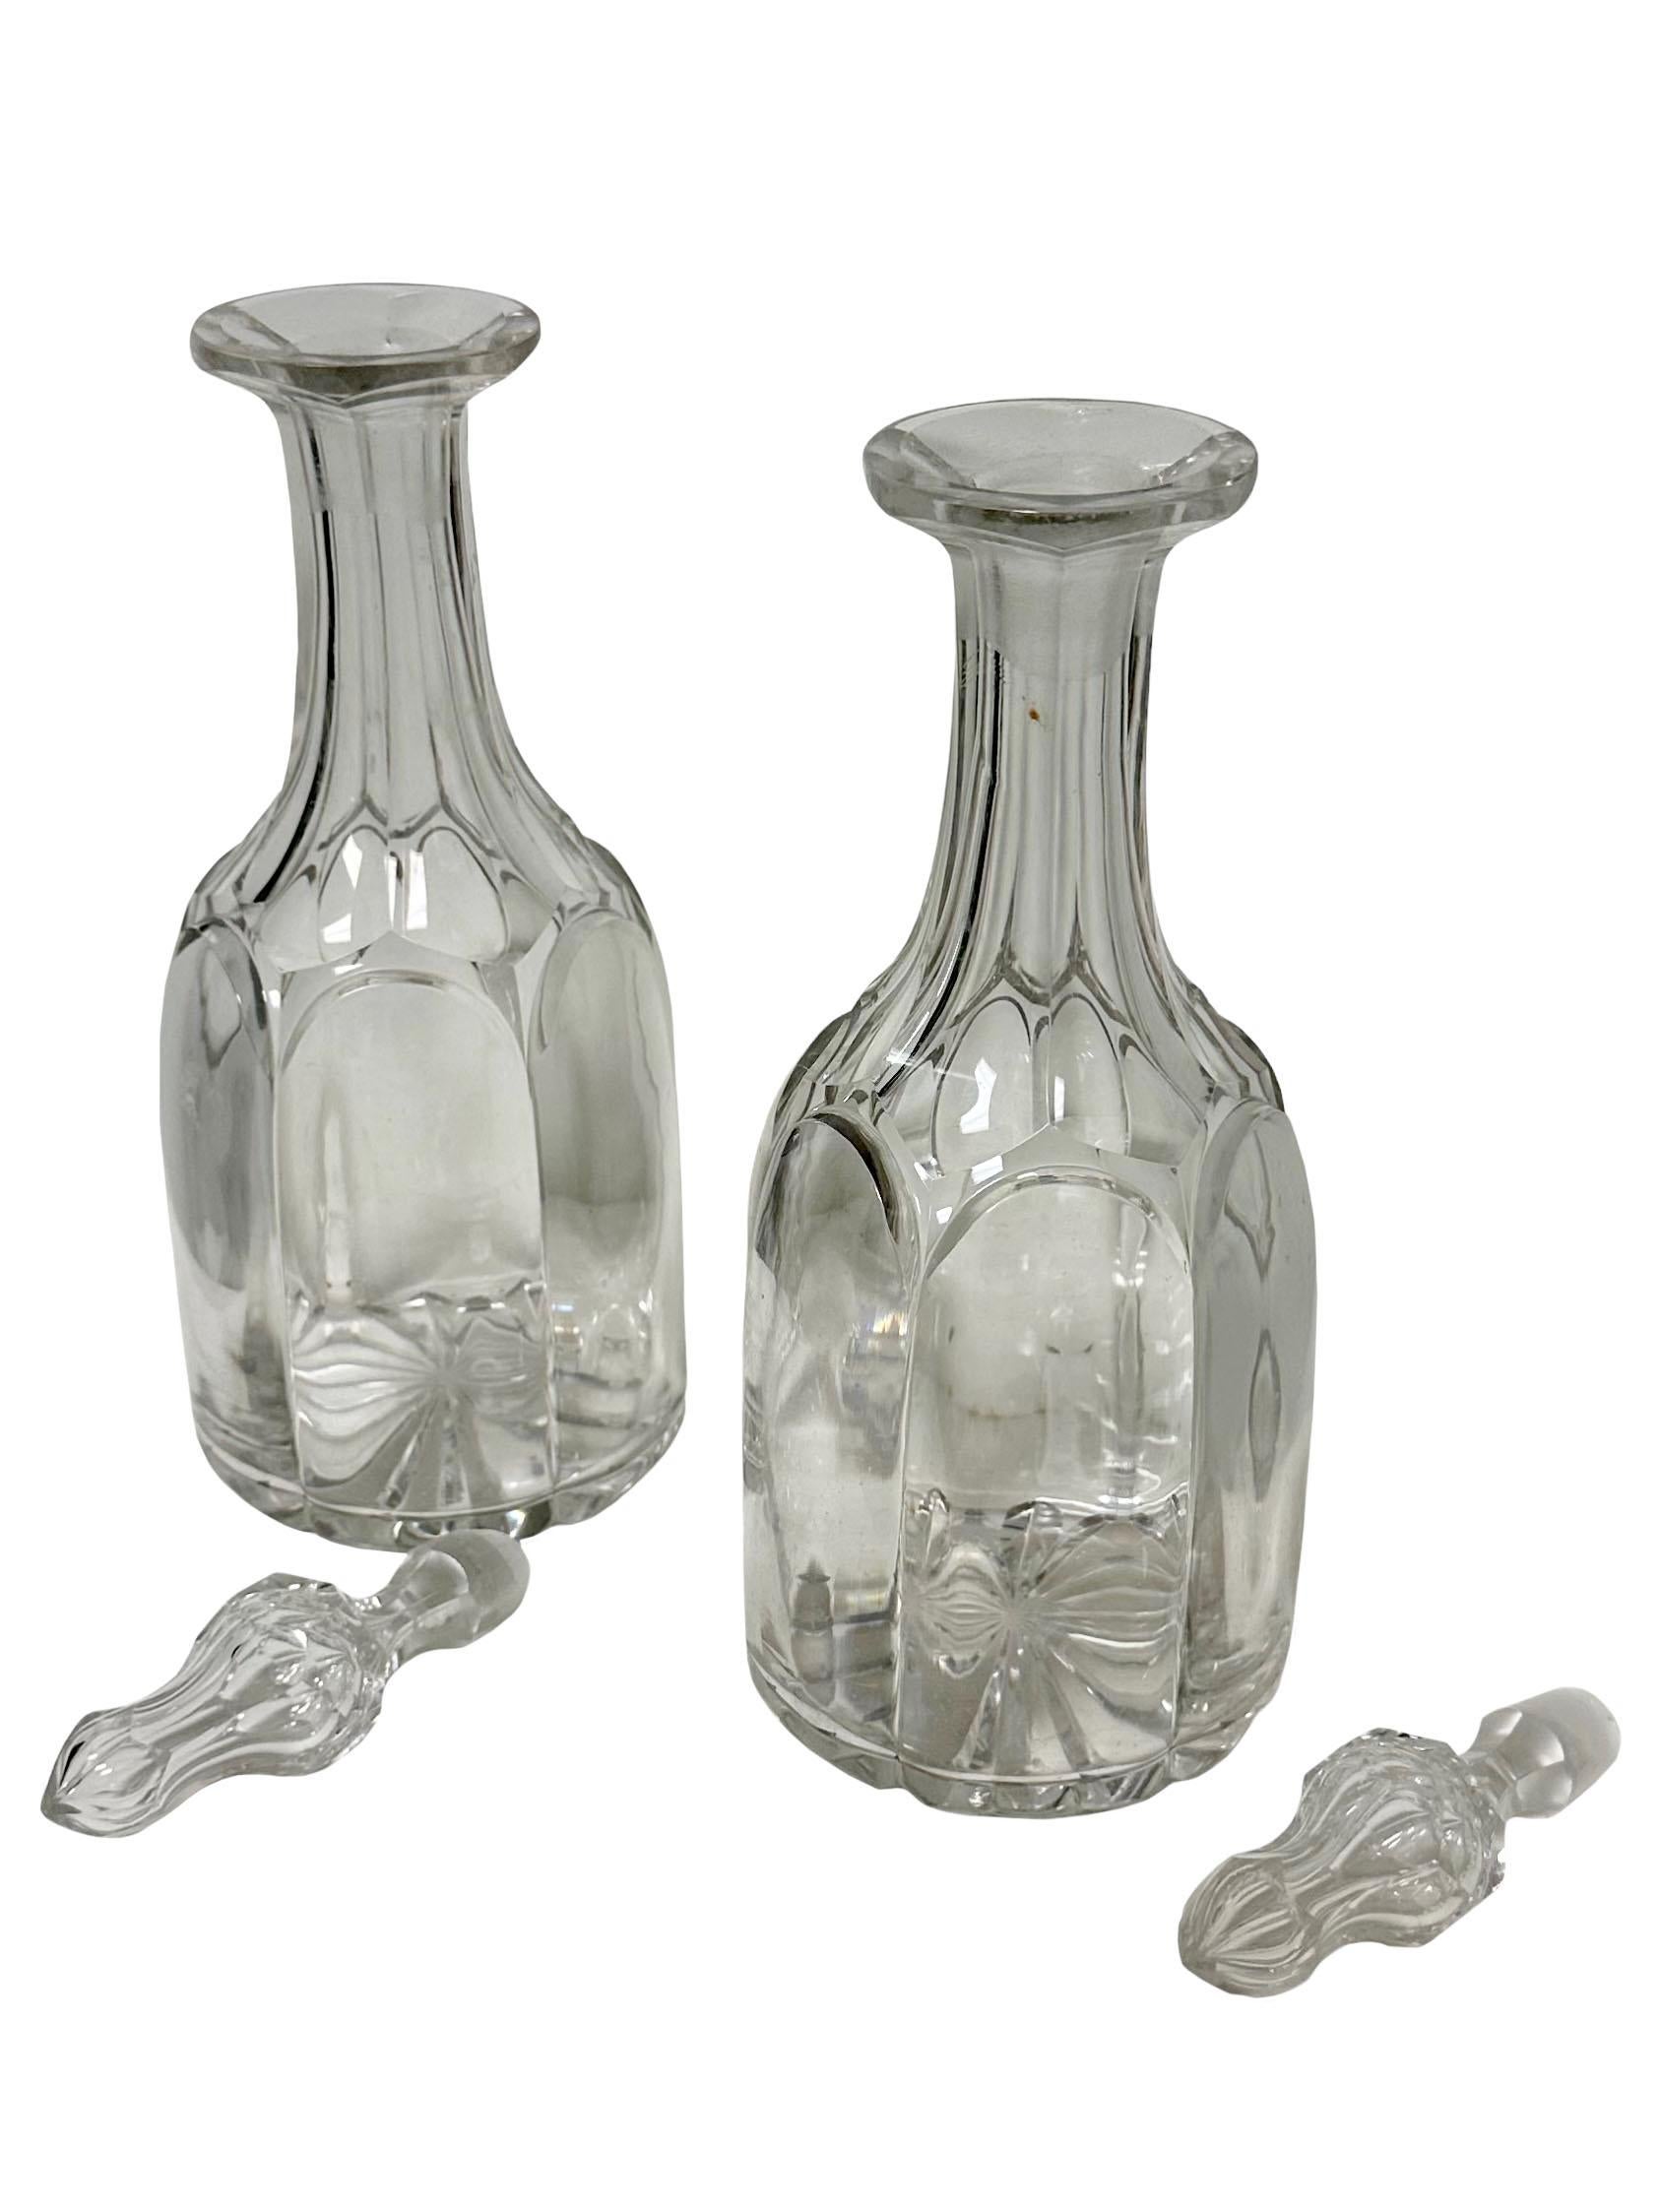 Il s'agit d'une magnifique paire de carafes en cristal de plomb taillé et soufflé à la main, avec de beaux fleurons. Ils datent d'environ 1820 à 1830 et sont probablement irlandais ou écossais, mais c'est un bel exemple de verre ancien. Ils sont en